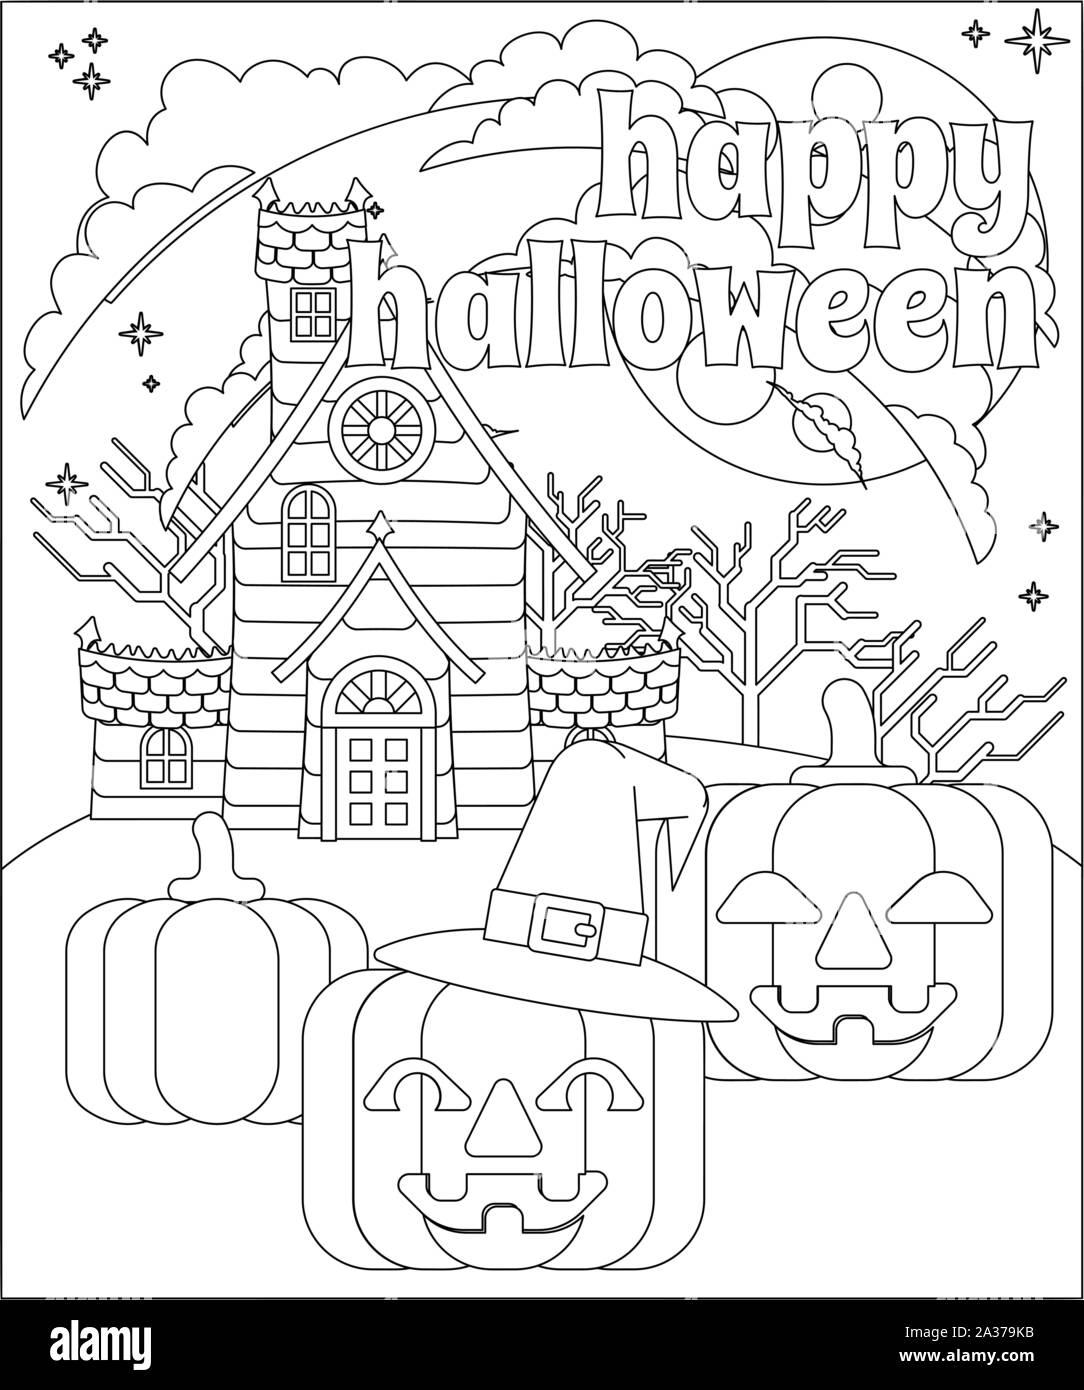 Happy Halloween Haunted House Pumpkin Background Stock Vector